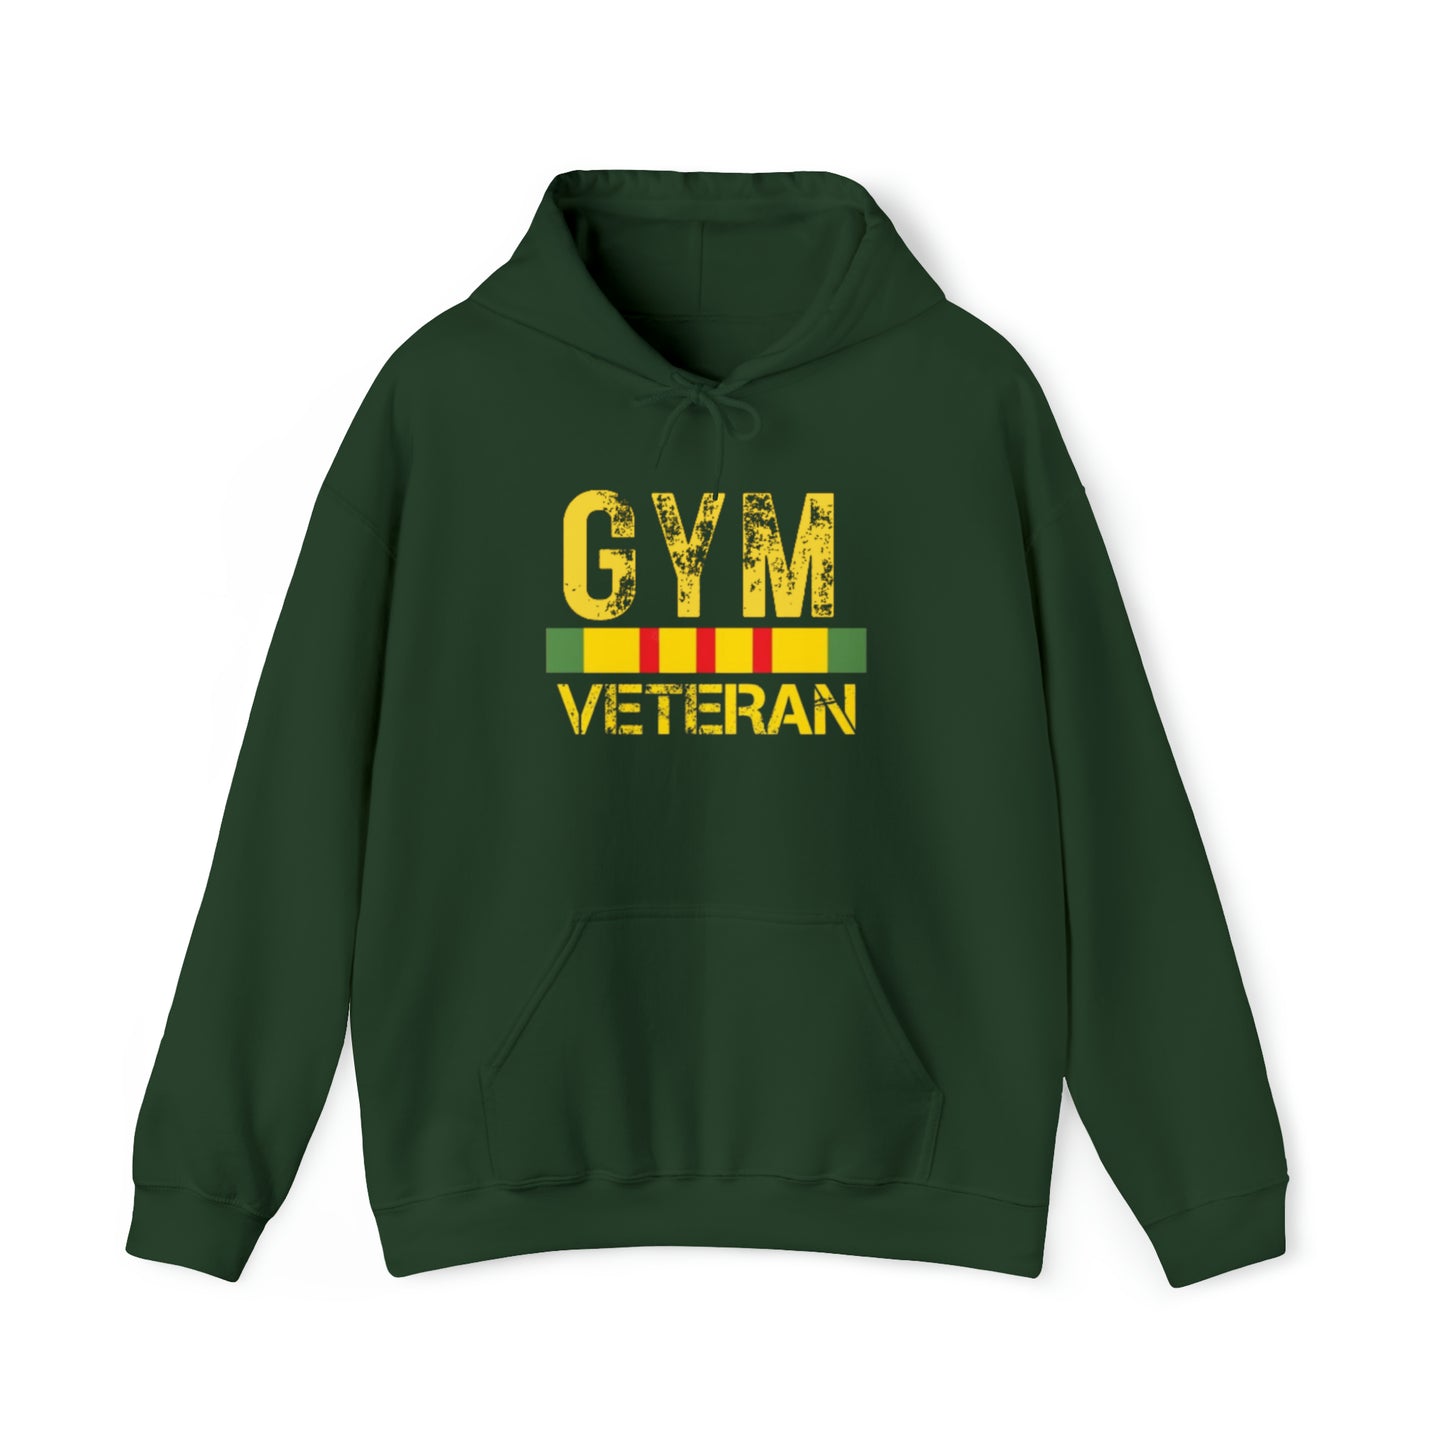 Gym Veteran Unisex Heavy Blend™ Hooded Sweatshirt